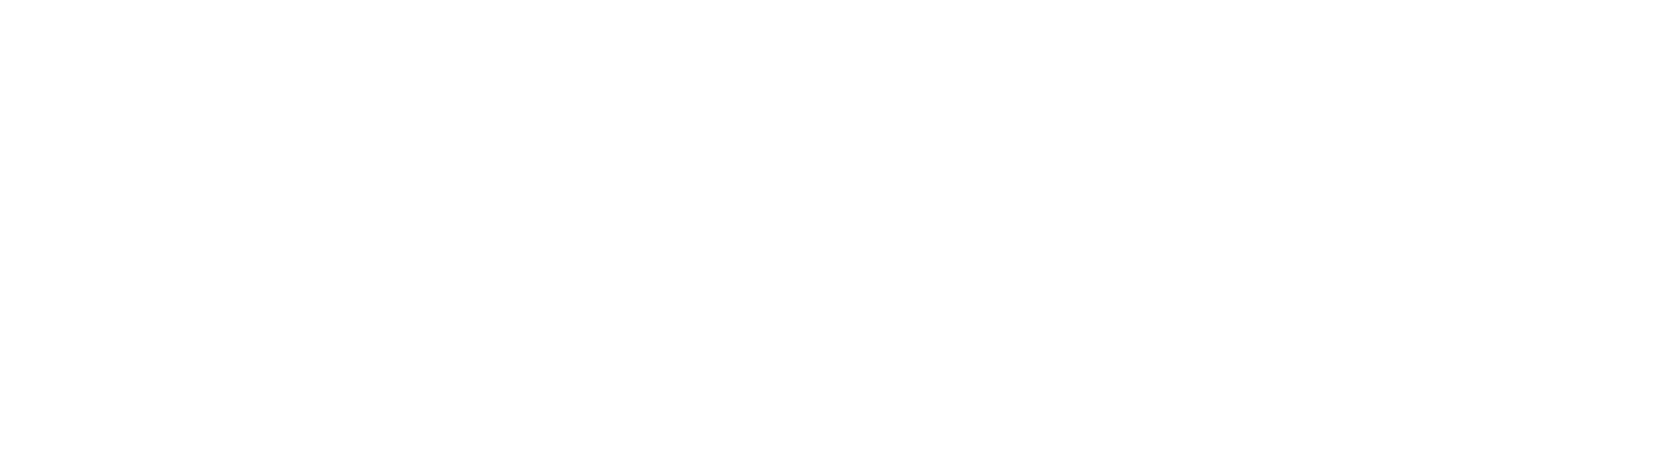 Рестайлинг айдентики Beesender. Новые версии логотипа: слева горизонтальный вариант, справа — вертикальный